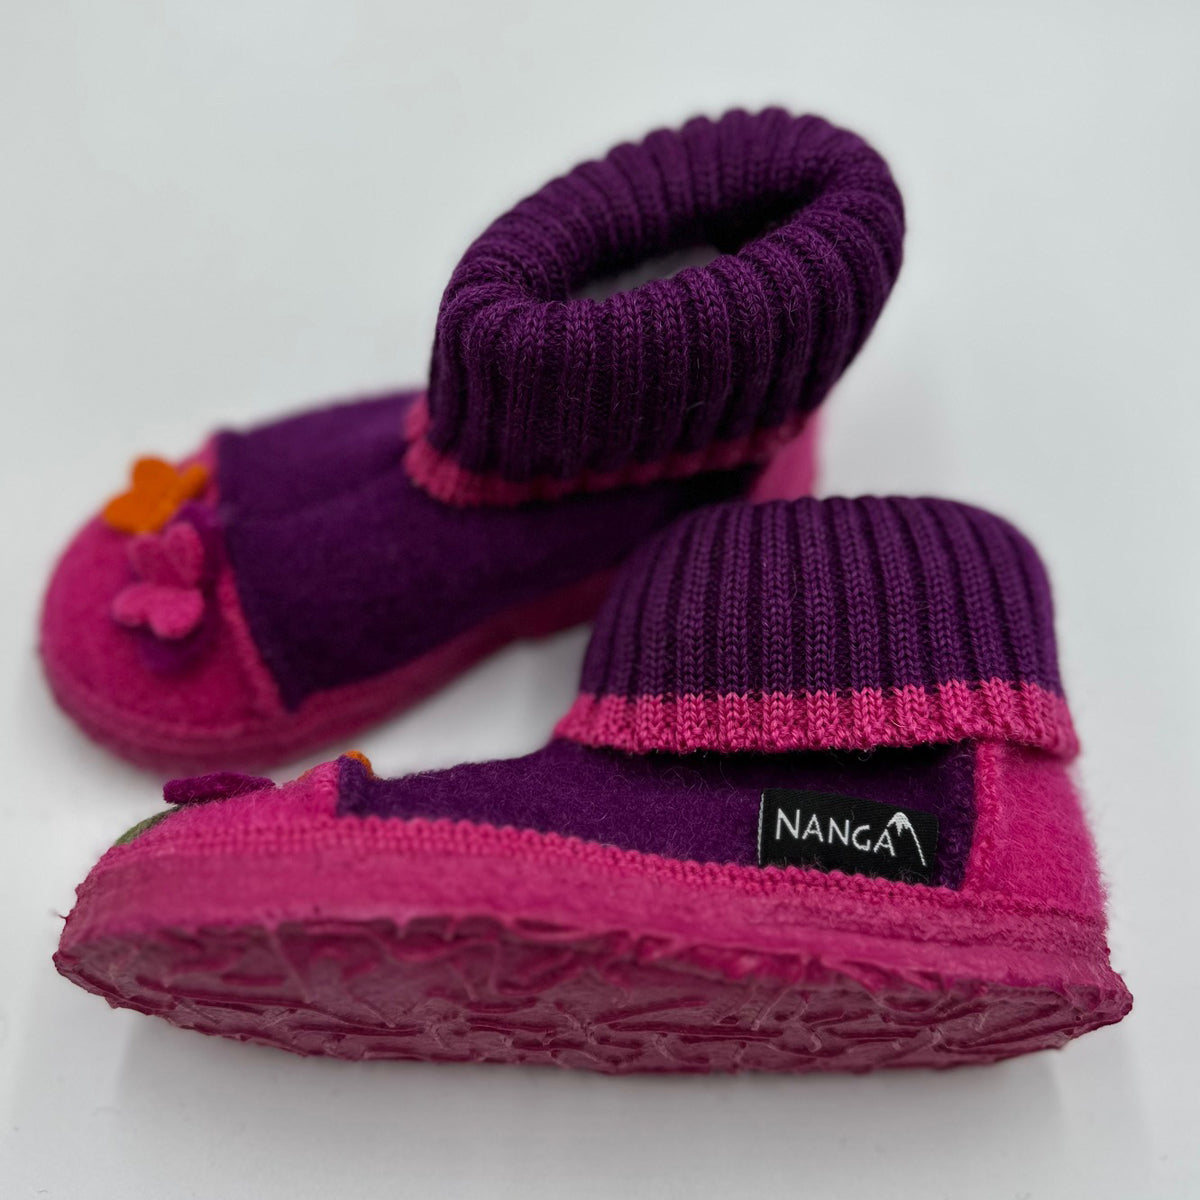 NANGA Boiled Wool Slippers for Children - Flower Pot